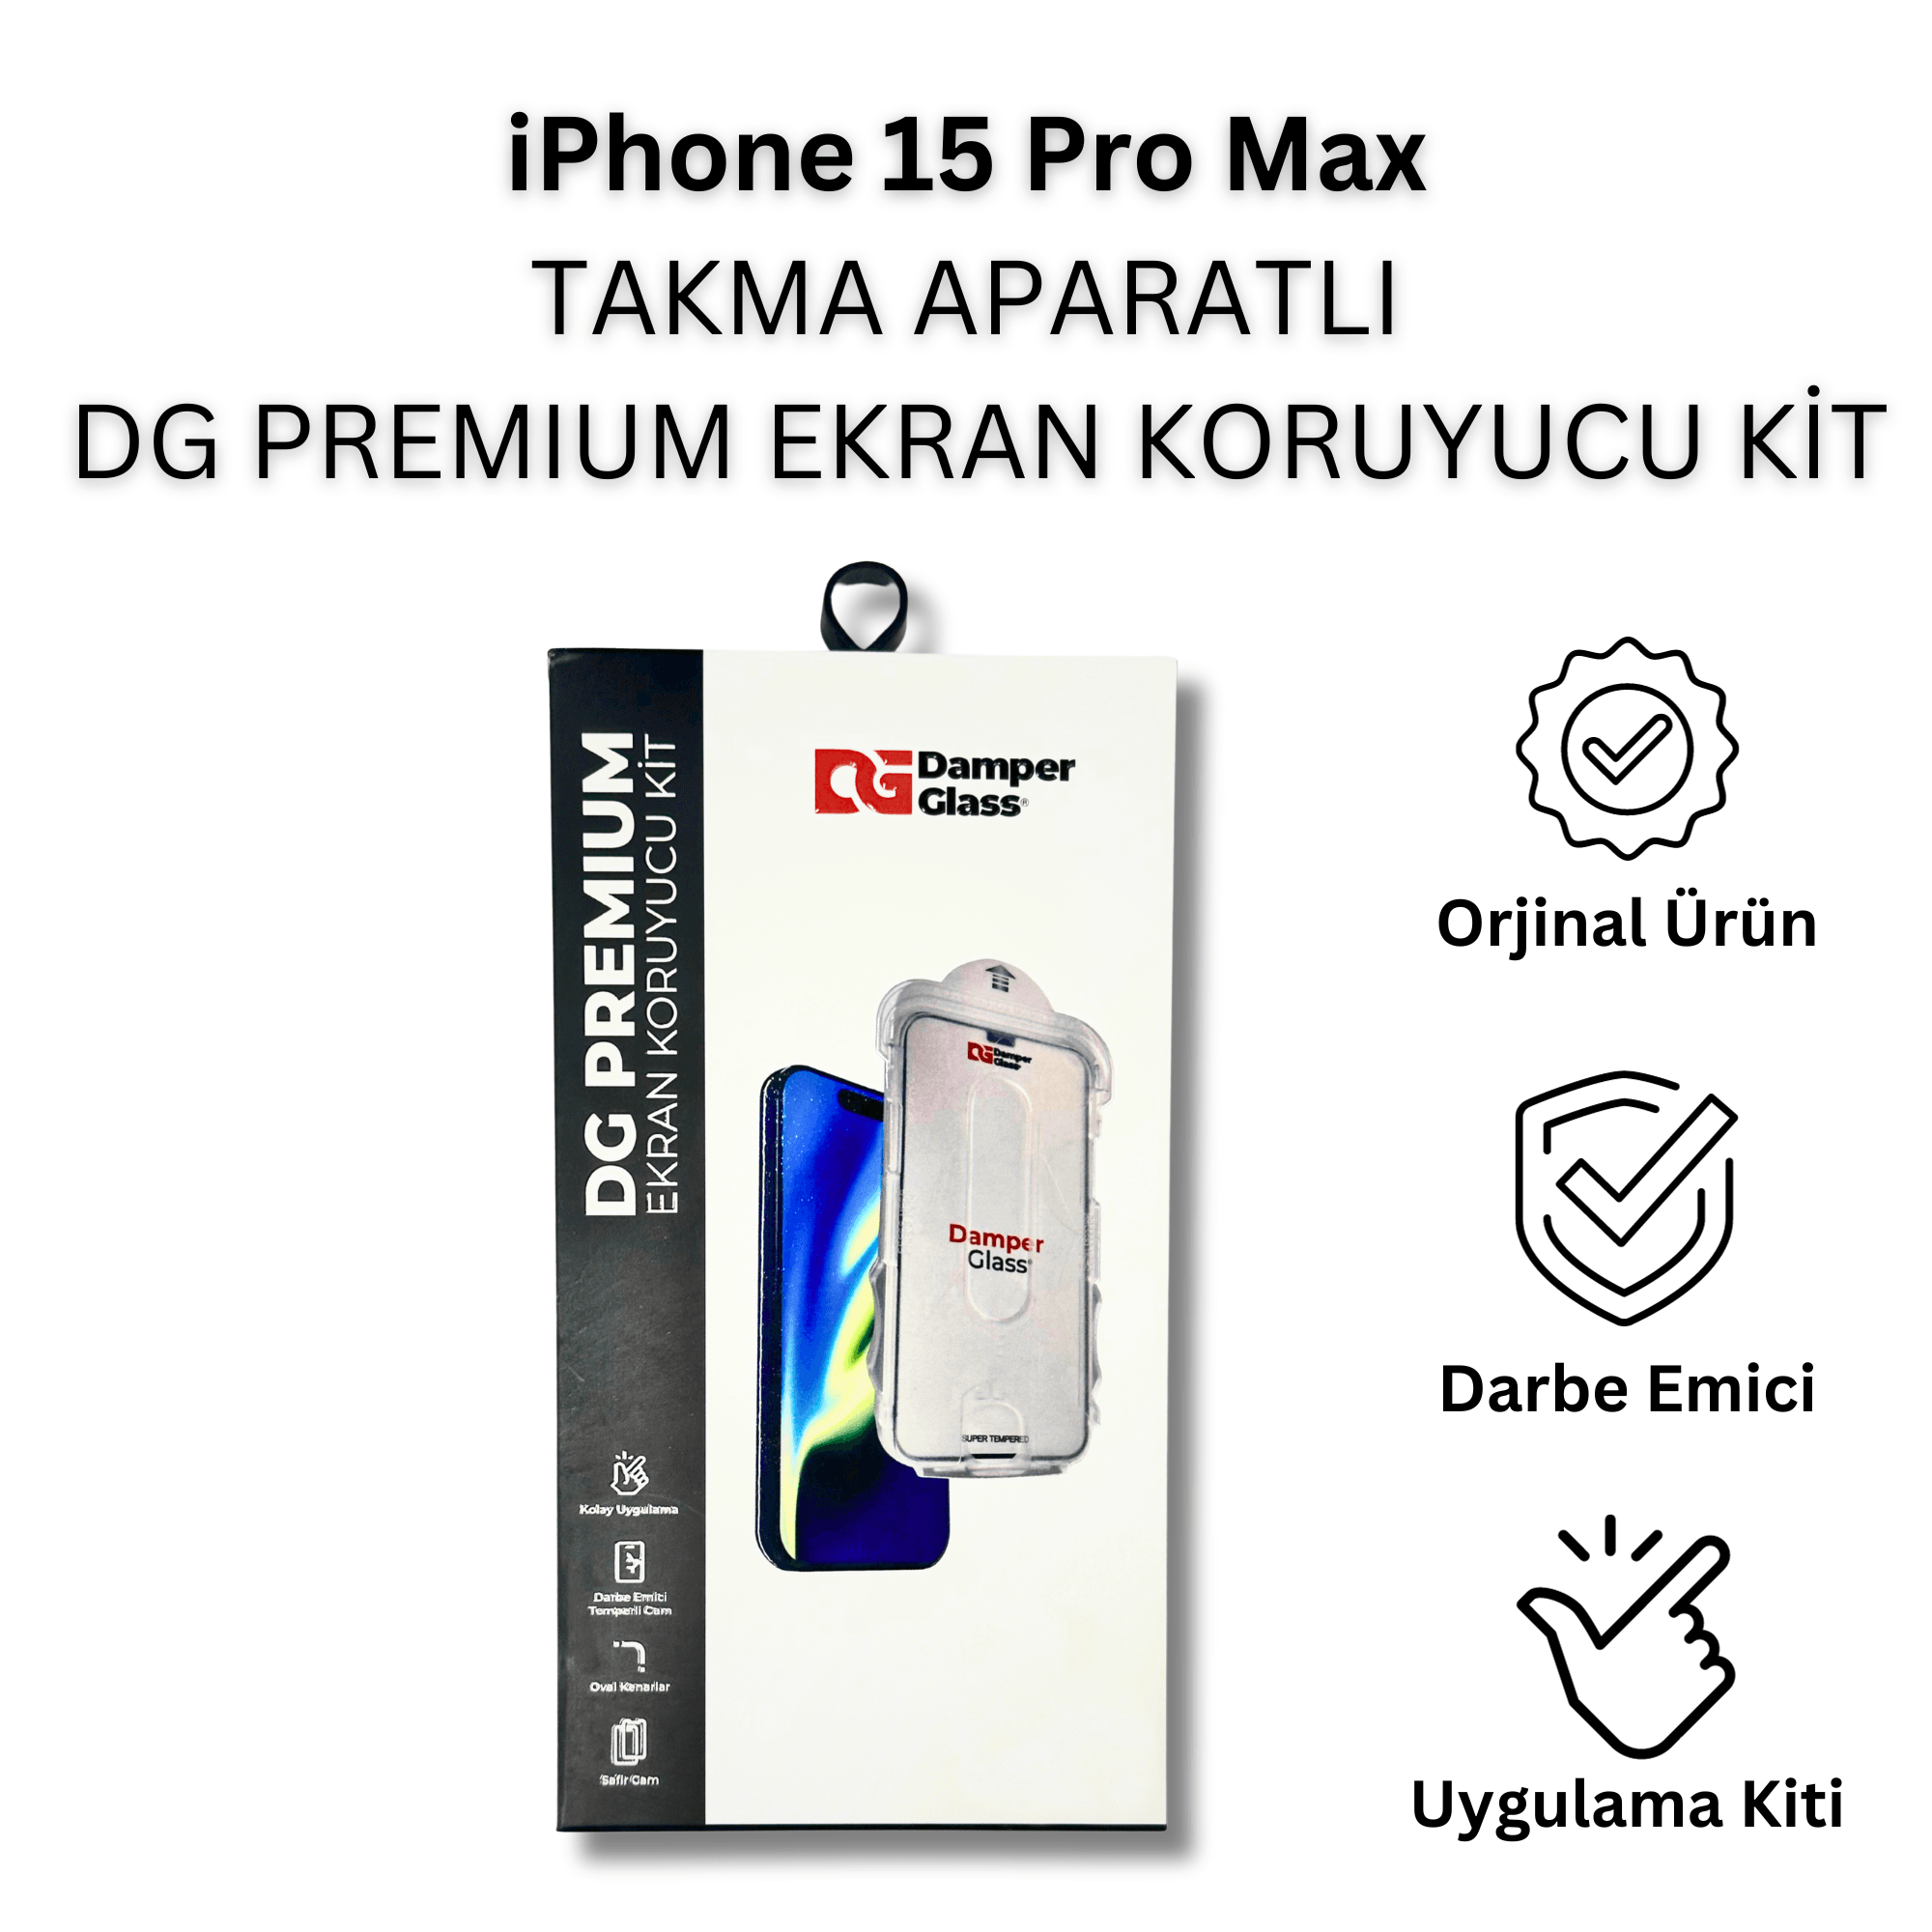 iPhone 15 Pro Max DG Premium Darbe Emici Takma Aparatlı Ekran Koruyucu Kit